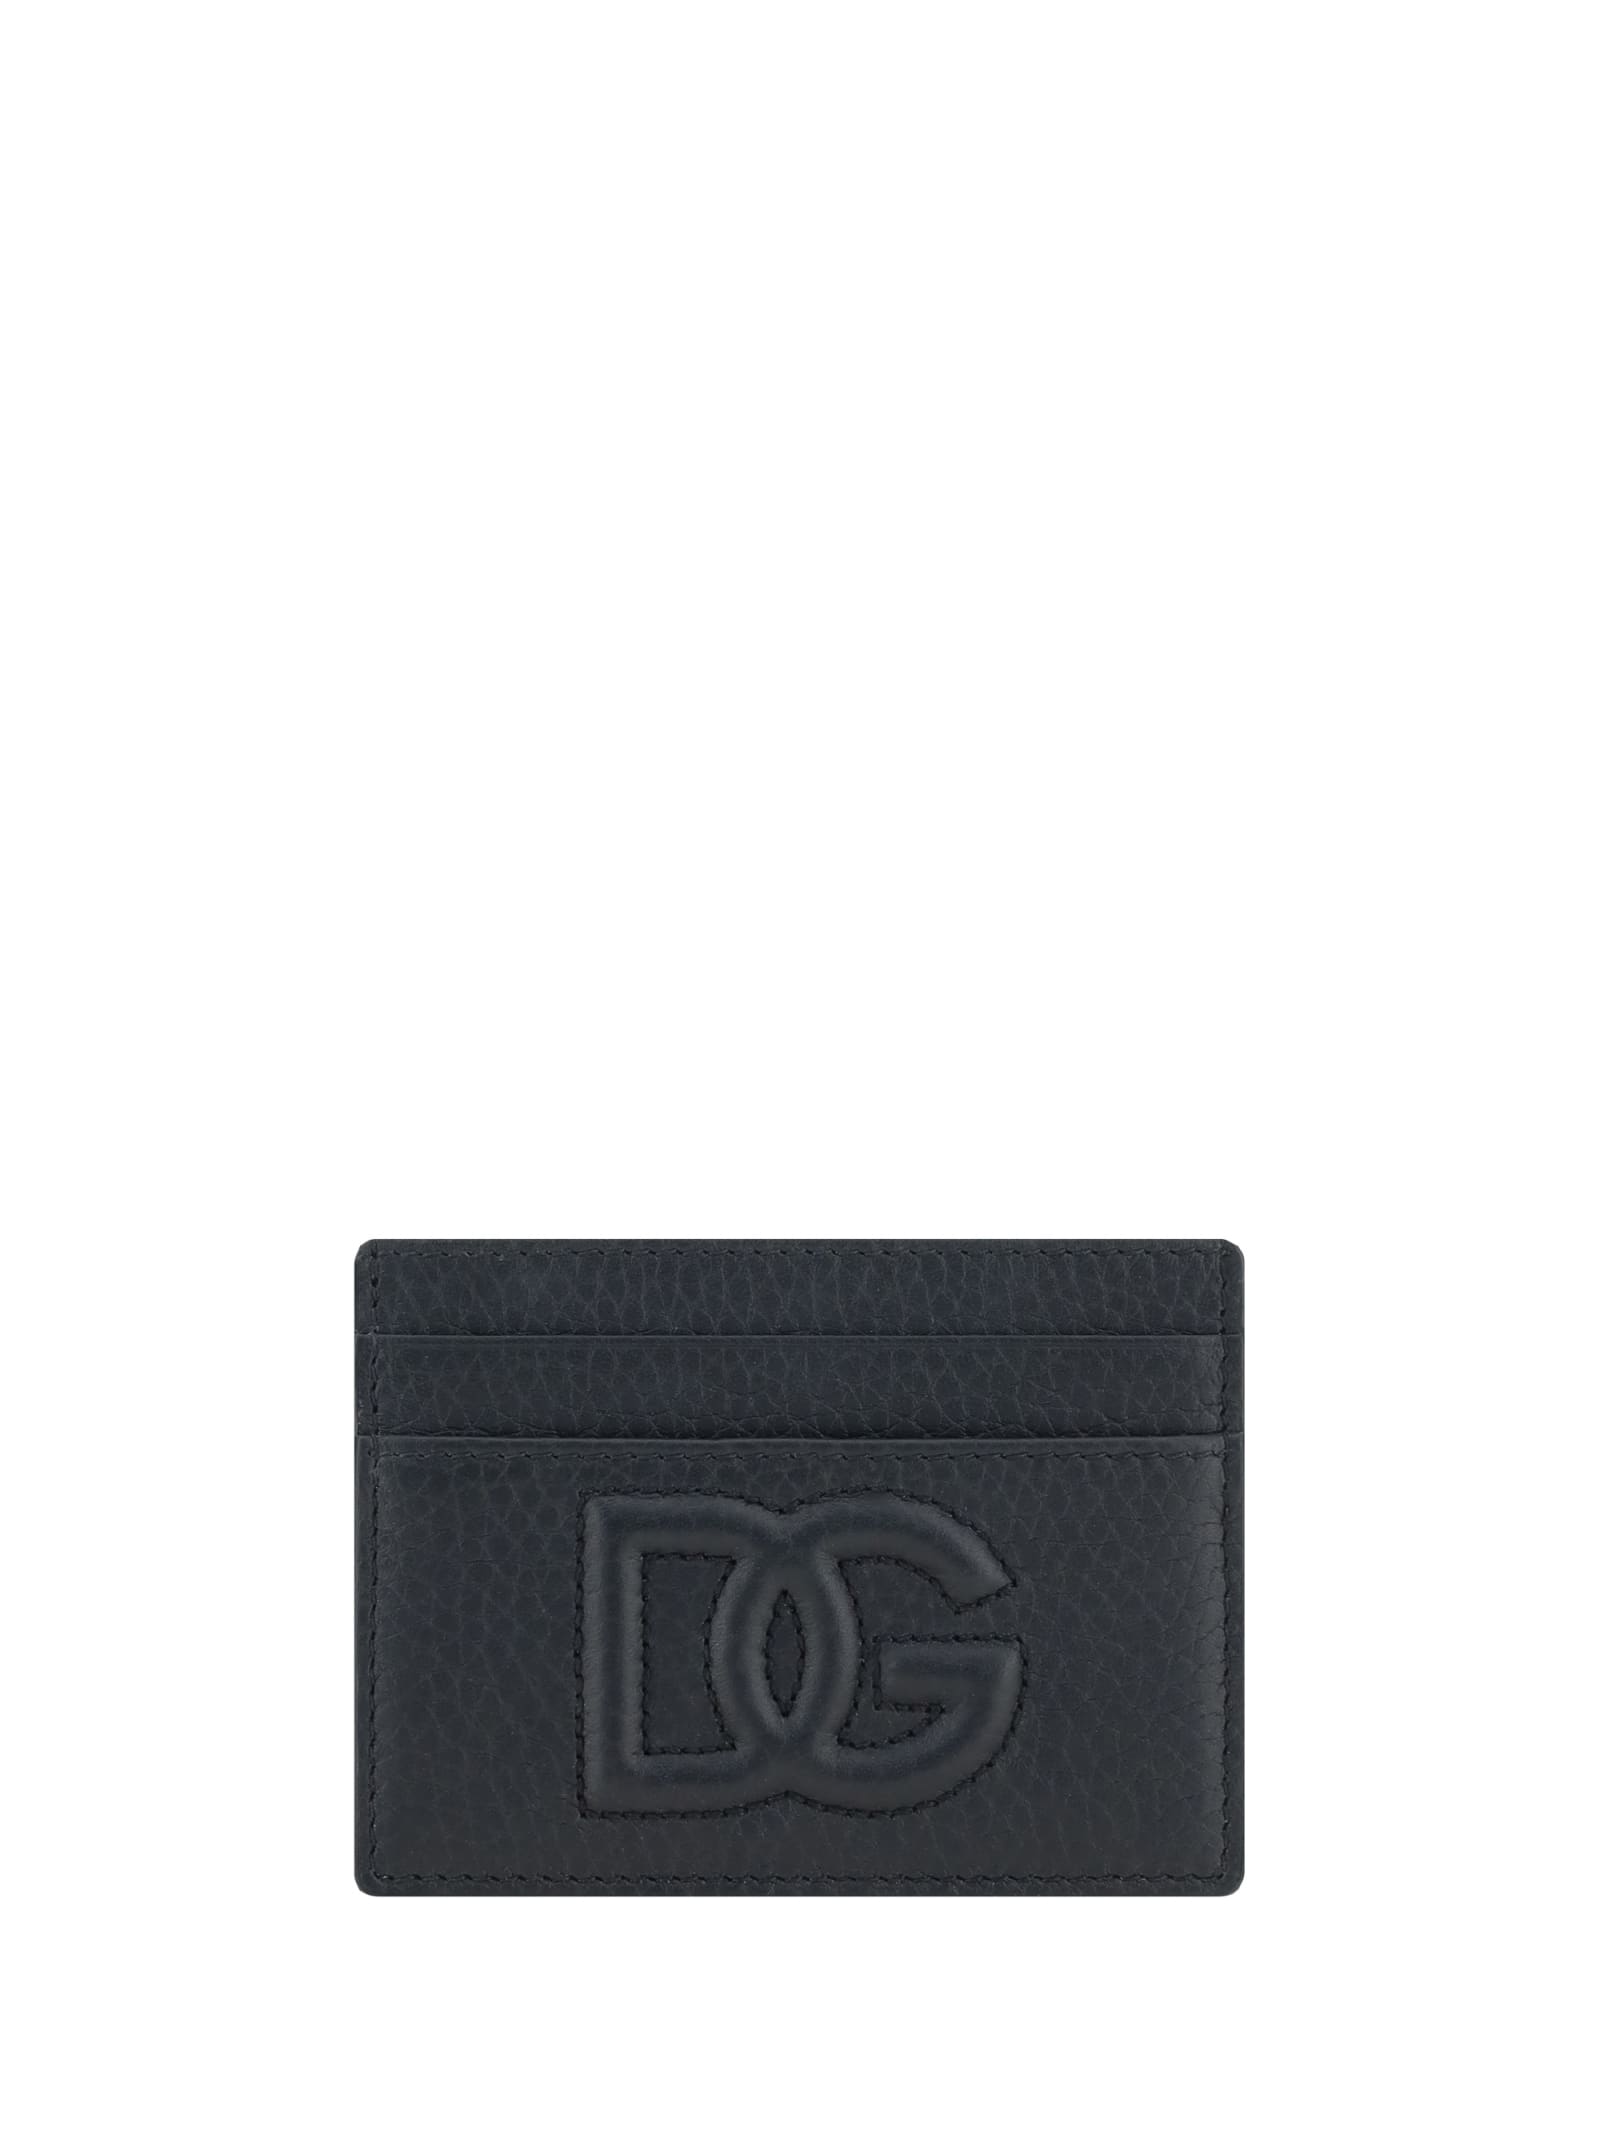 Shop Dolce & Gabbana Card Holder In Nero